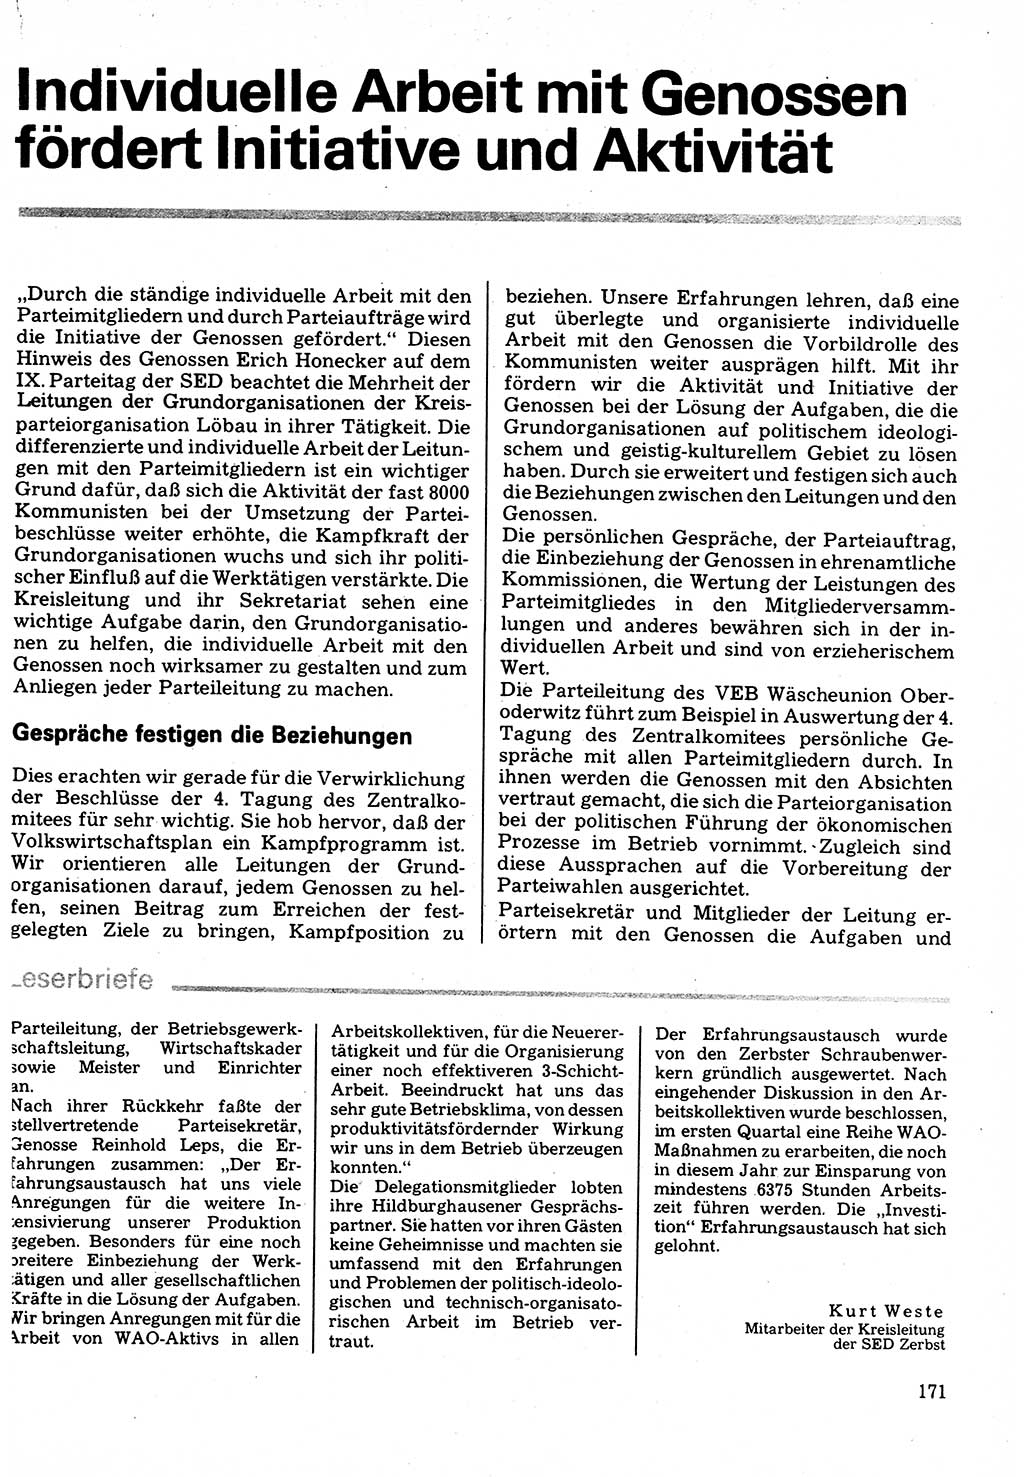 Neuer Weg (NW), Organ des Zentralkomitees (ZK) der SED (Sozialistische Einheitspartei Deutschlands) für Fragen des Parteilebens, 32. Jahrgang [Deutsche Demokratische Republik (DDR)] 1977, Seite 171 (NW ZK SED DDR 1977, S. 171)